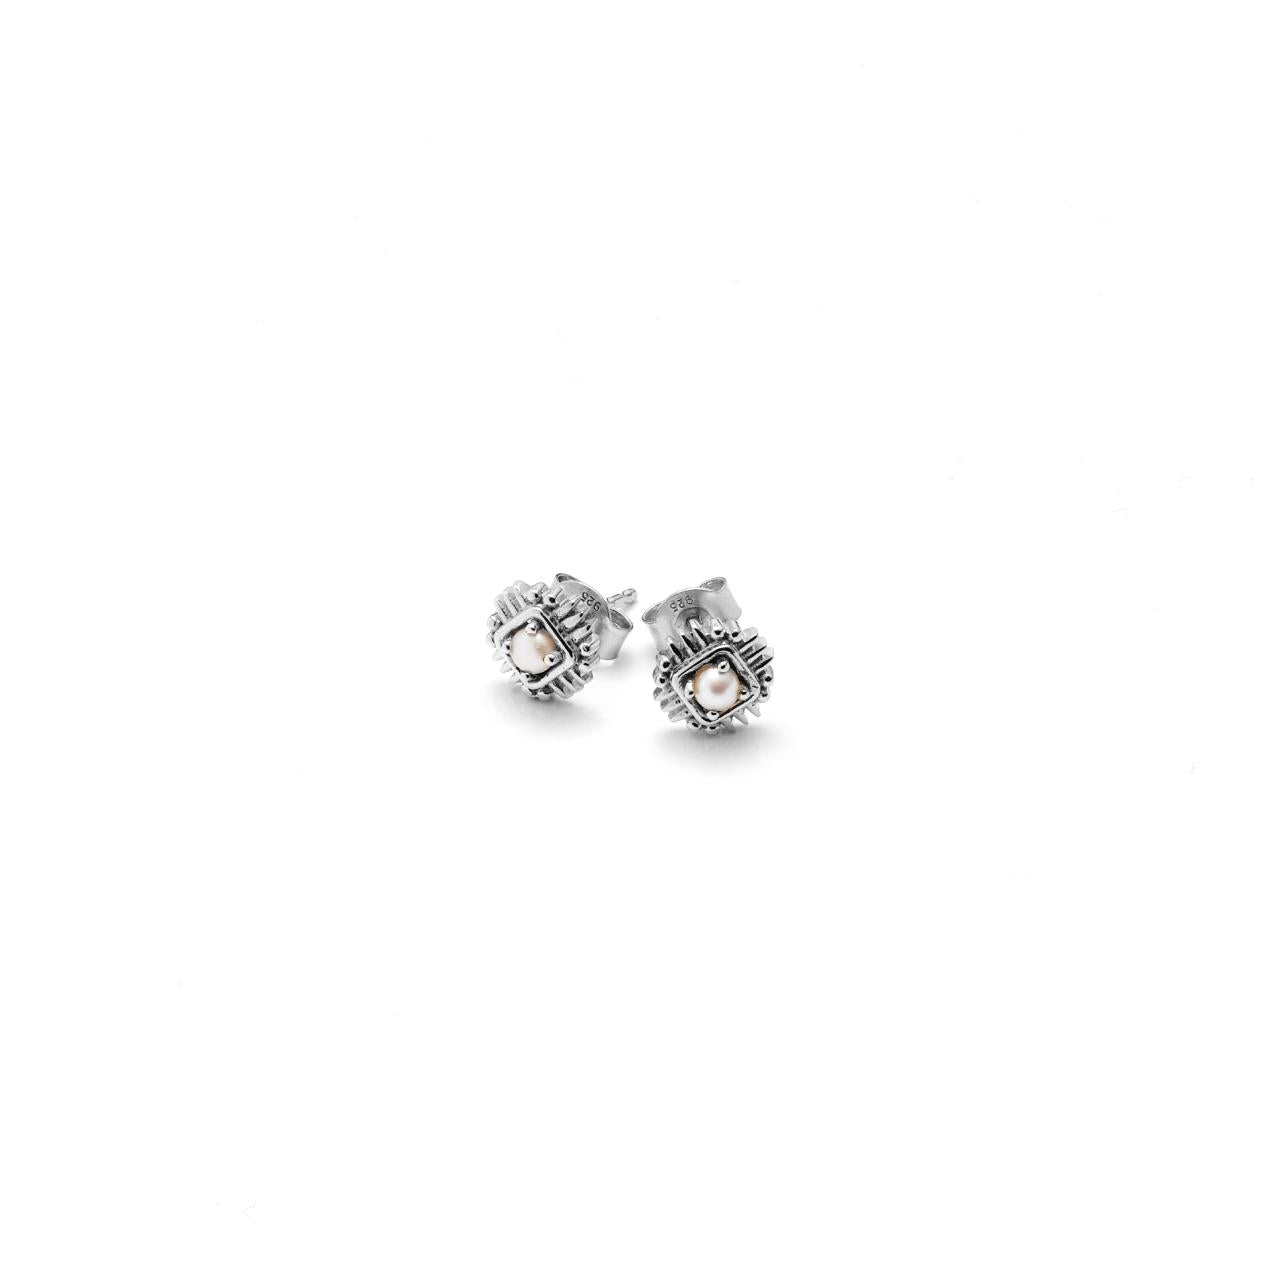 Petite Perle Earrings - SSRP